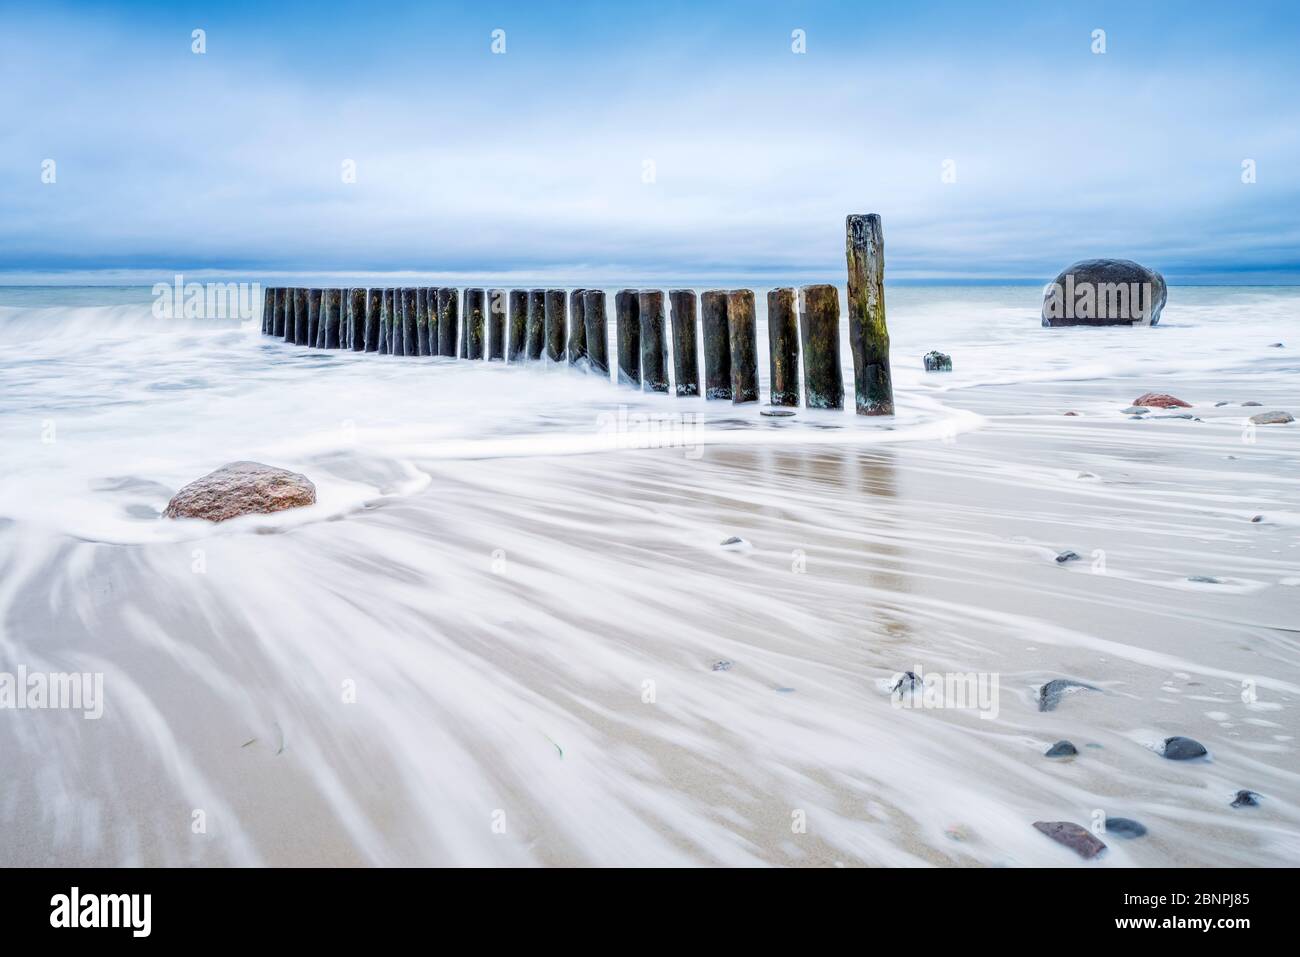 Groyne et rochers sur la plage de la mer Baltique, ciel nuageux, mer orageux, près de Rostock, Mecklenburg-Ouest Pomerania, Allemagne Banque D'Images